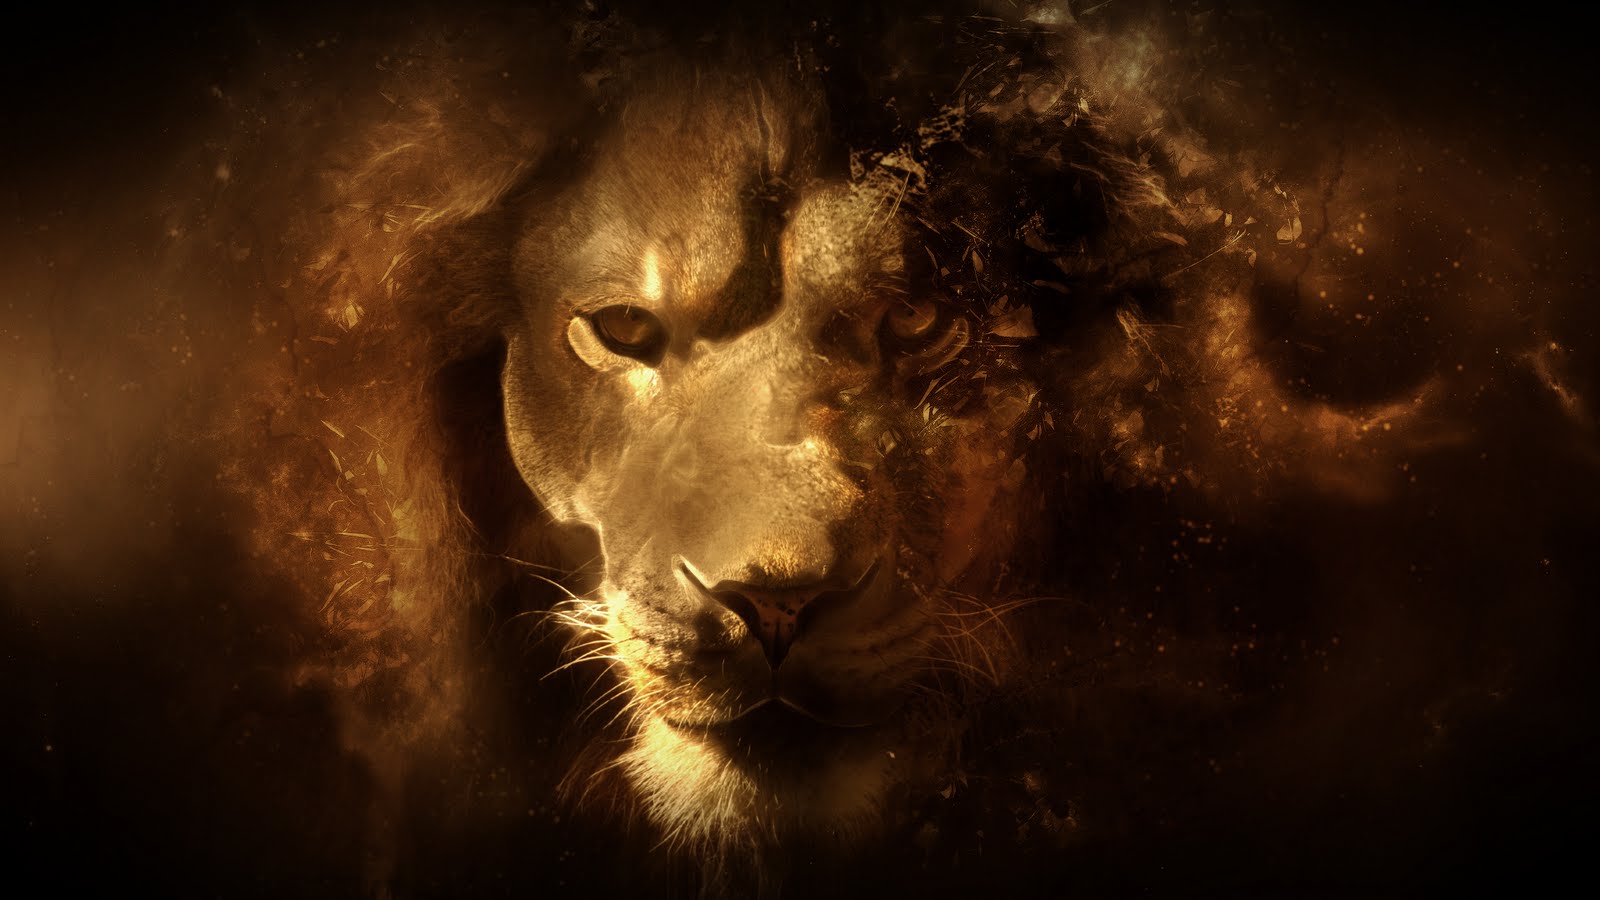 Lion Desktop Wallpaper HD